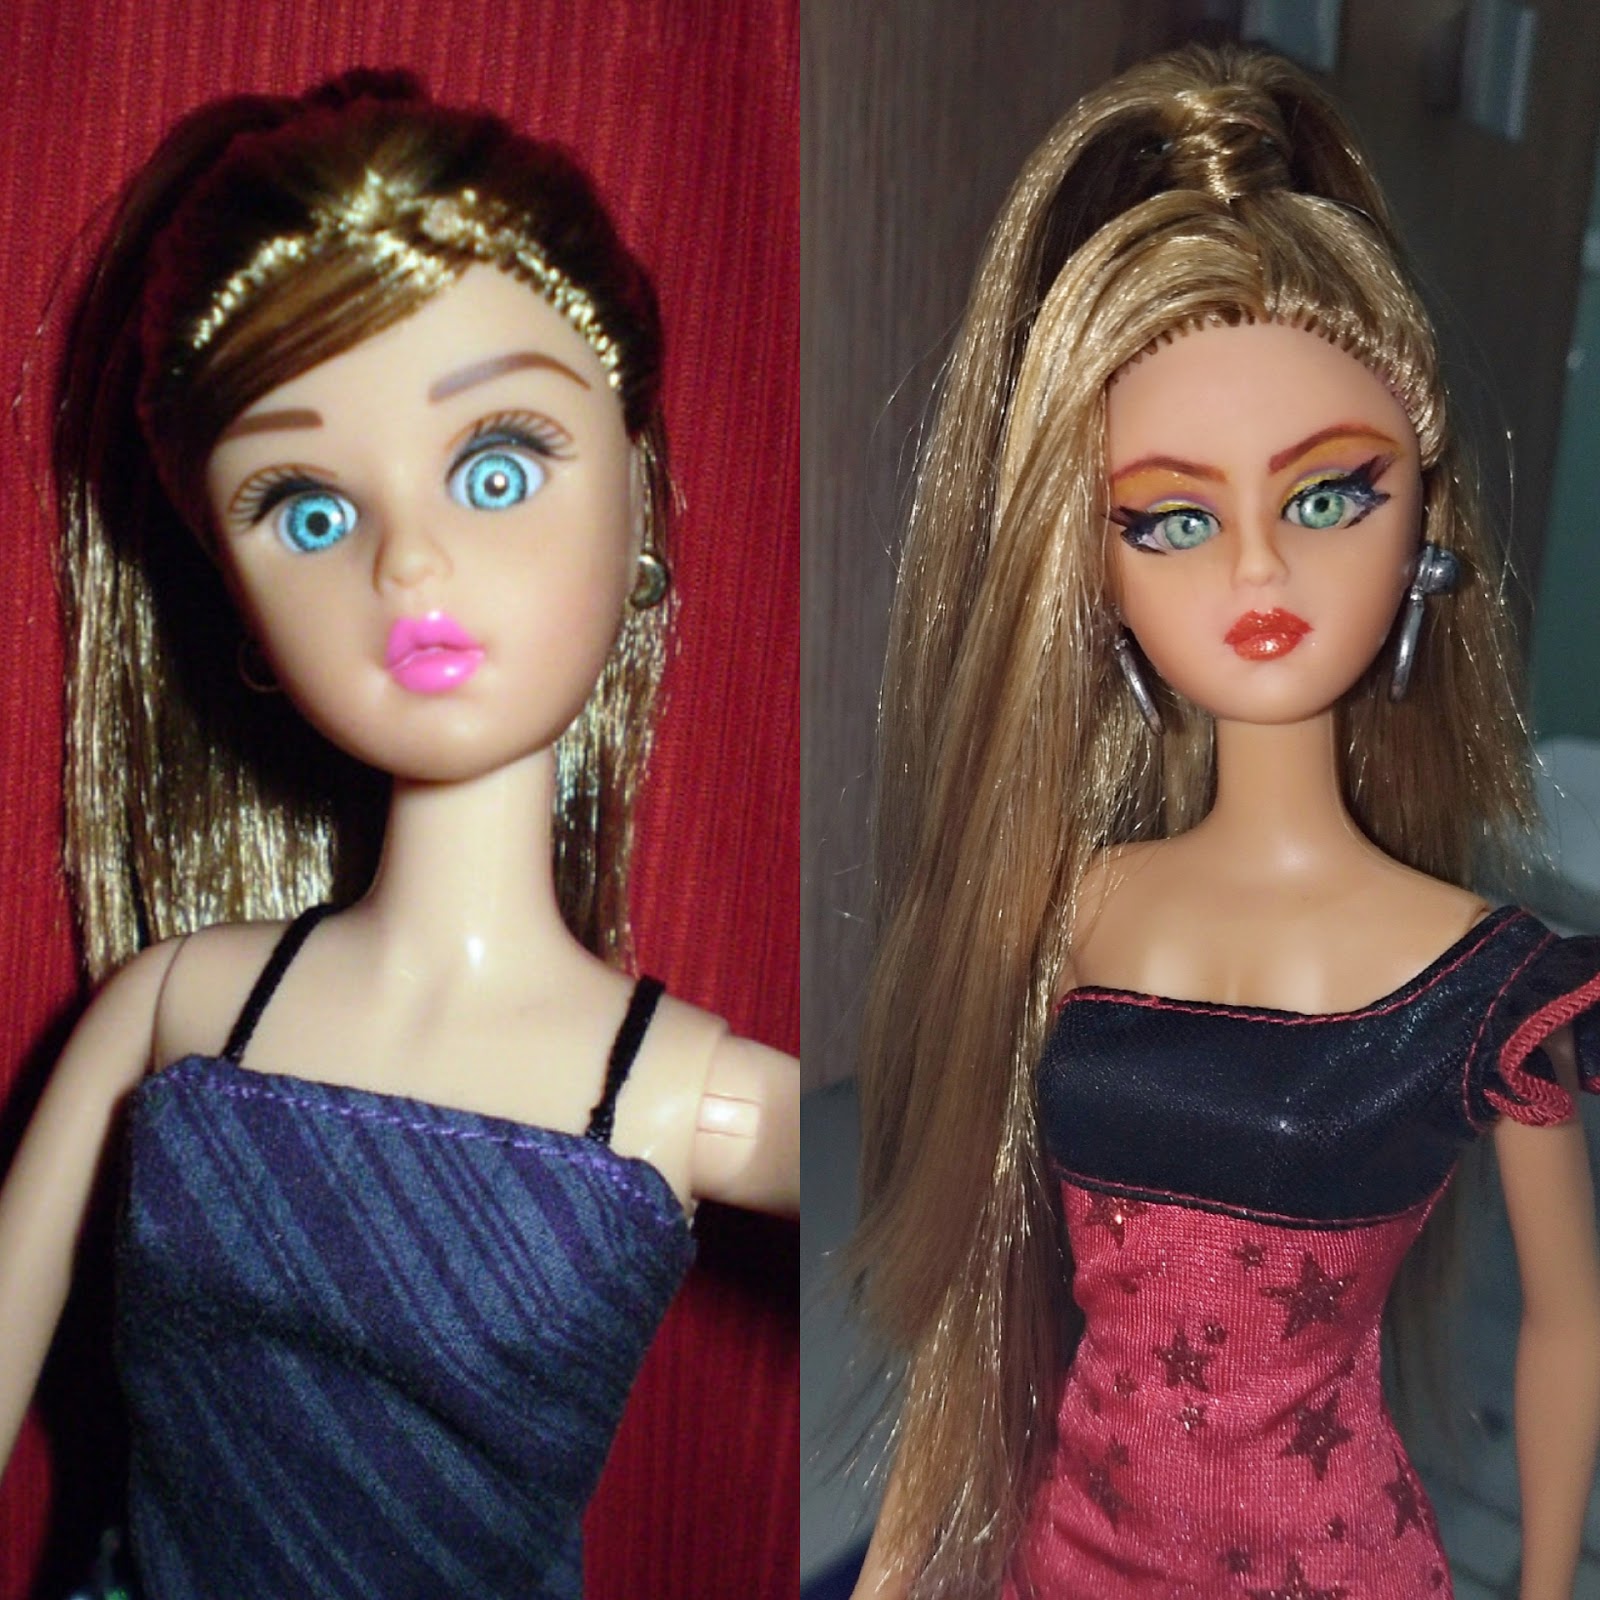 Quero ser Barbie 16 - Sofia Pet #diy #comofazer #repaint #rerrot  #customização #dicas 